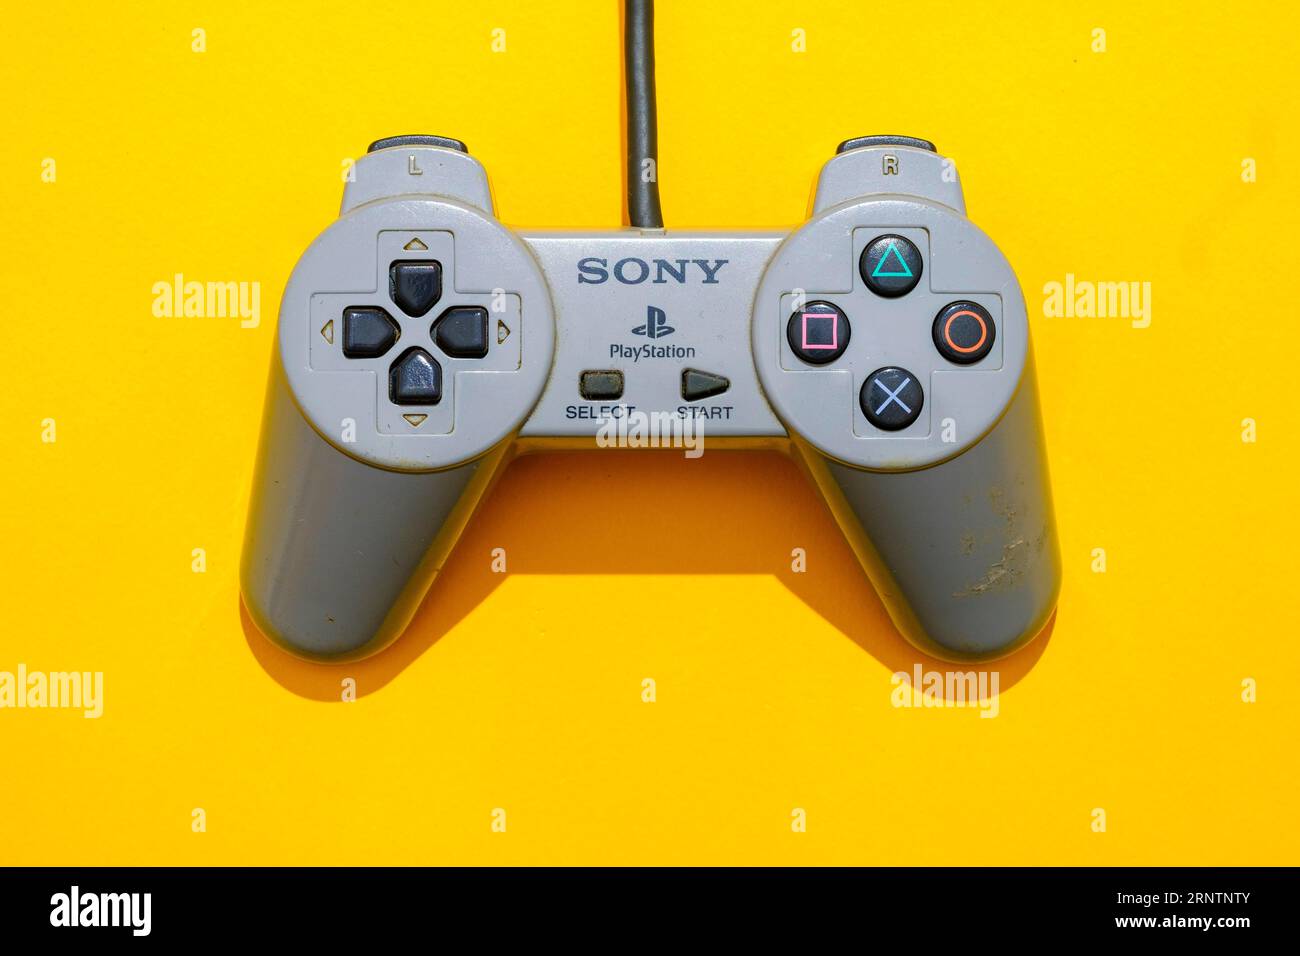 Playstation 1 immagini e fotografie stock ad alta risoluzione - Alamy